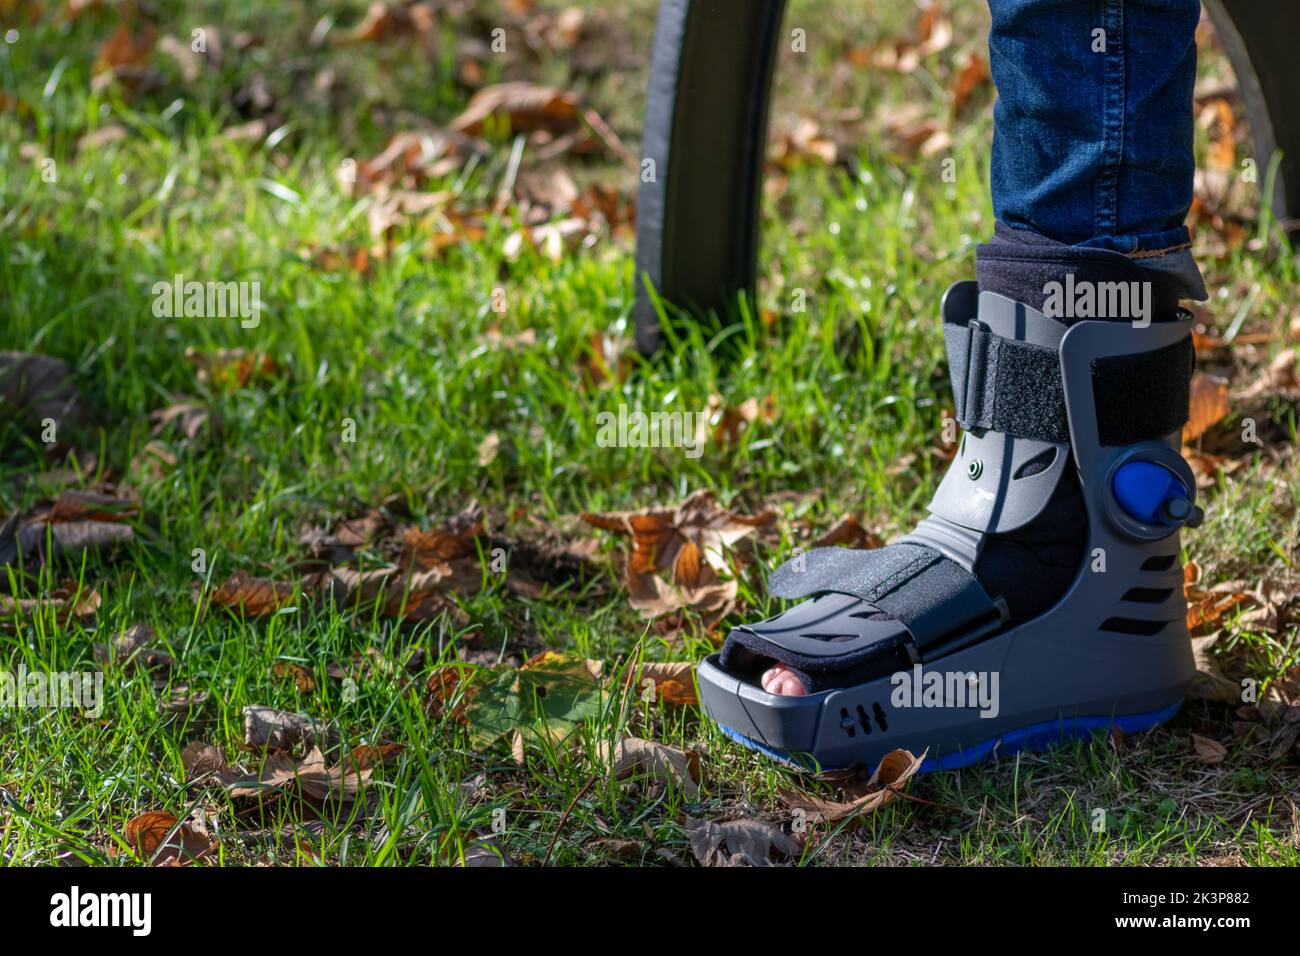 Un garçon avec un pied cassé et une chaussure orthopédique ou un marcheur après une fracture osseuse repose dans un parc public sur un banc en herbe verte pour recréer et réhabiliter Banque D'Images